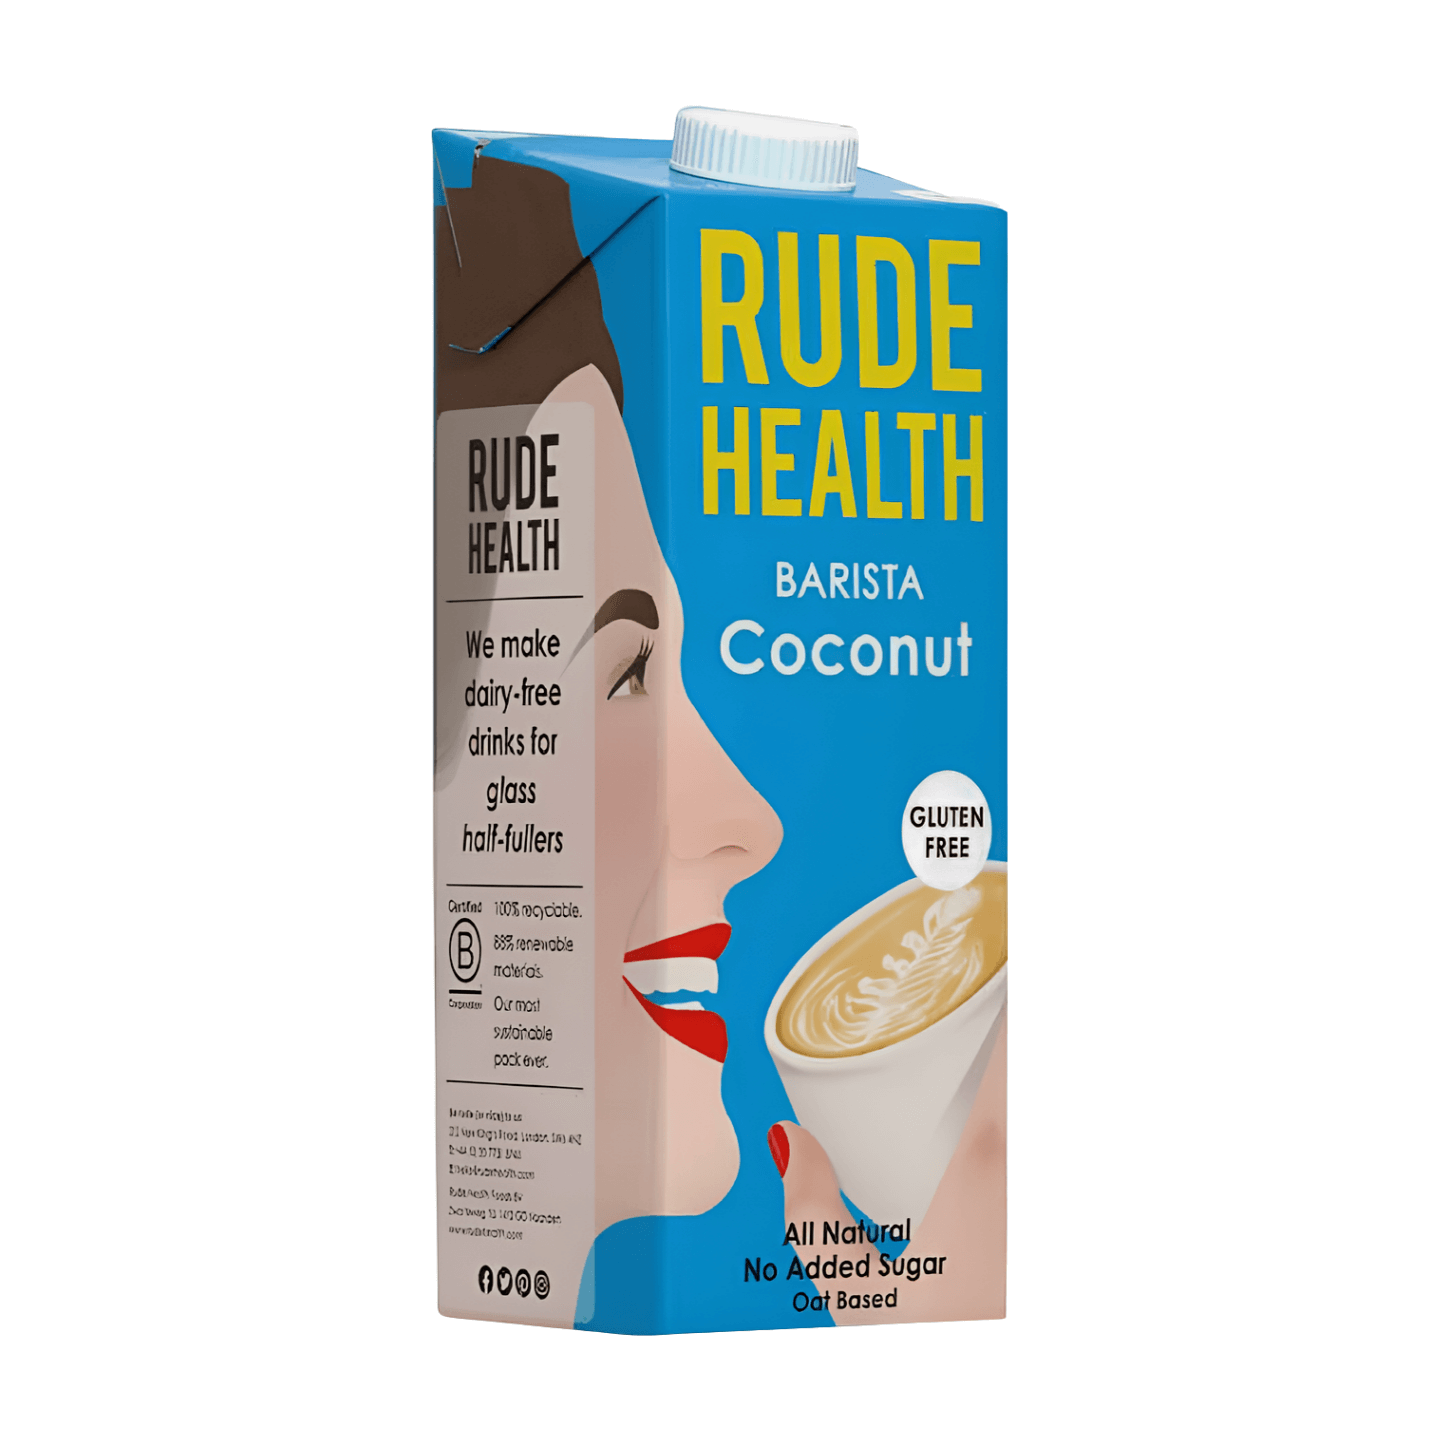 Rude Health Barista Coconut